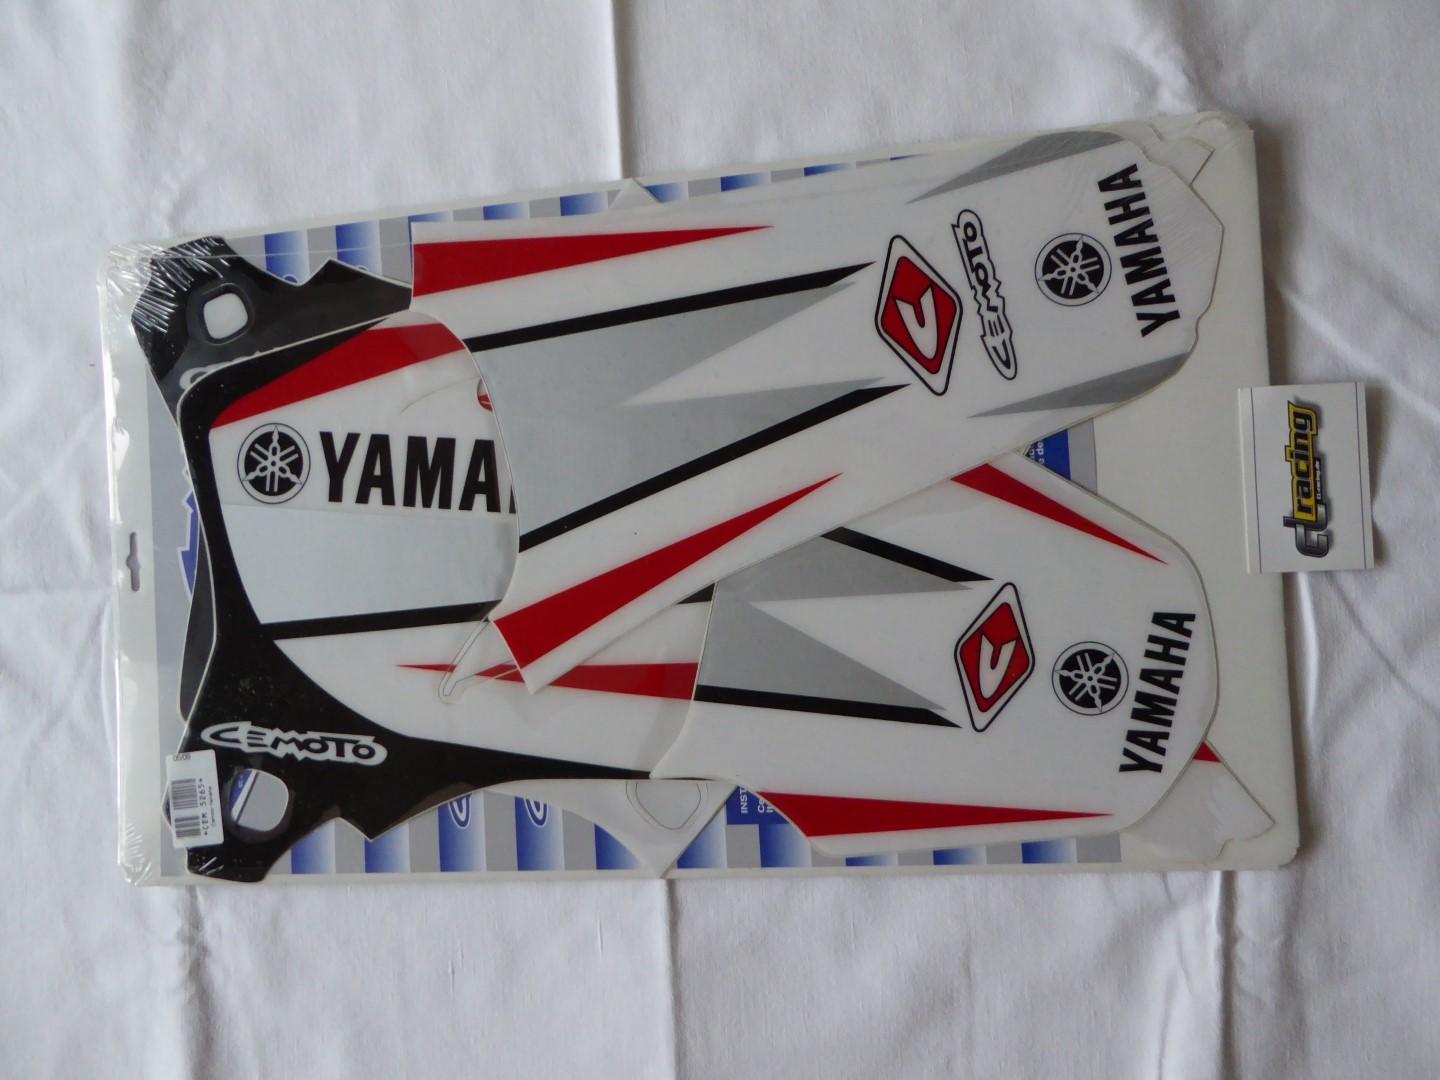 Dekorsatz Aufkleber Sticker Verkleidung graphic kit für Yamaha Yzf Wrf 250 450